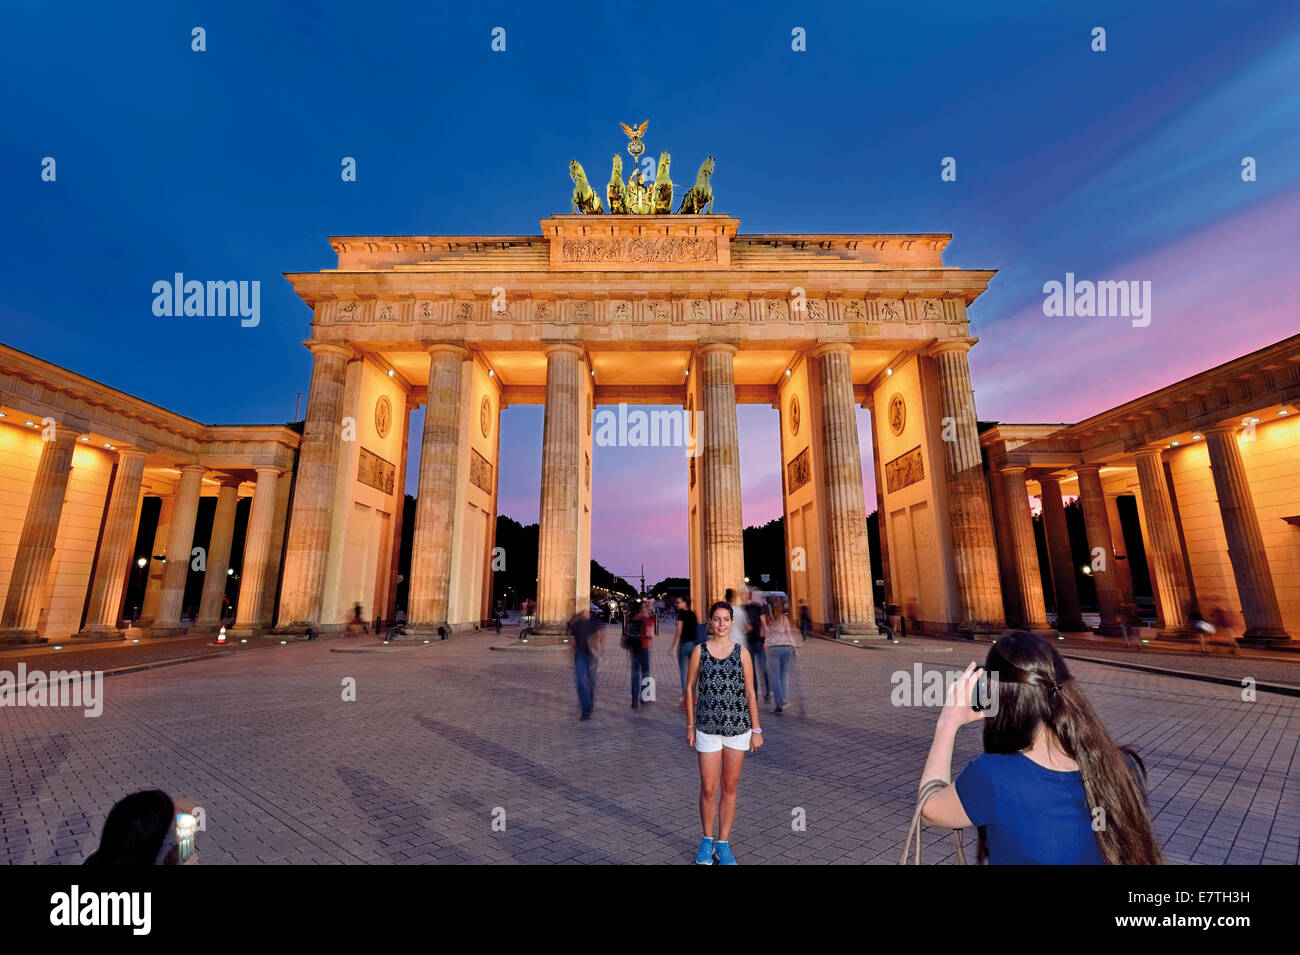 Germania Berlino: turisti acquisizione dello snapshot in notturna illuminata Porta di Brandeburgo Foto Stock